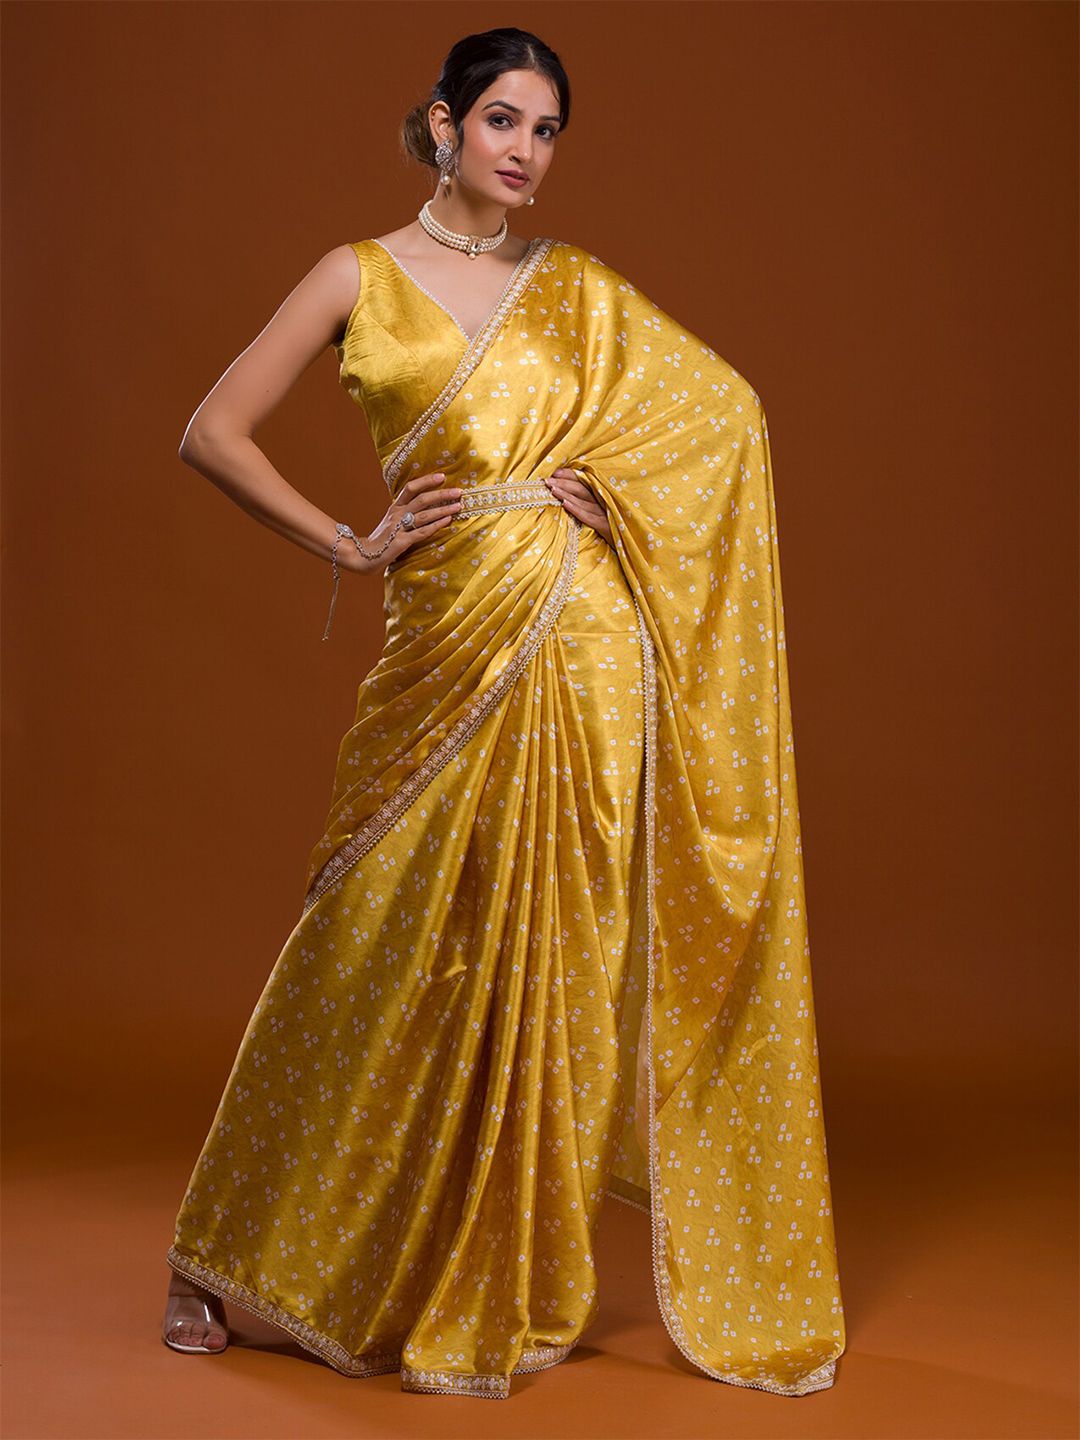 Koskii Yellow & White Bandhani Embroidered Bandhani Saree Price in India